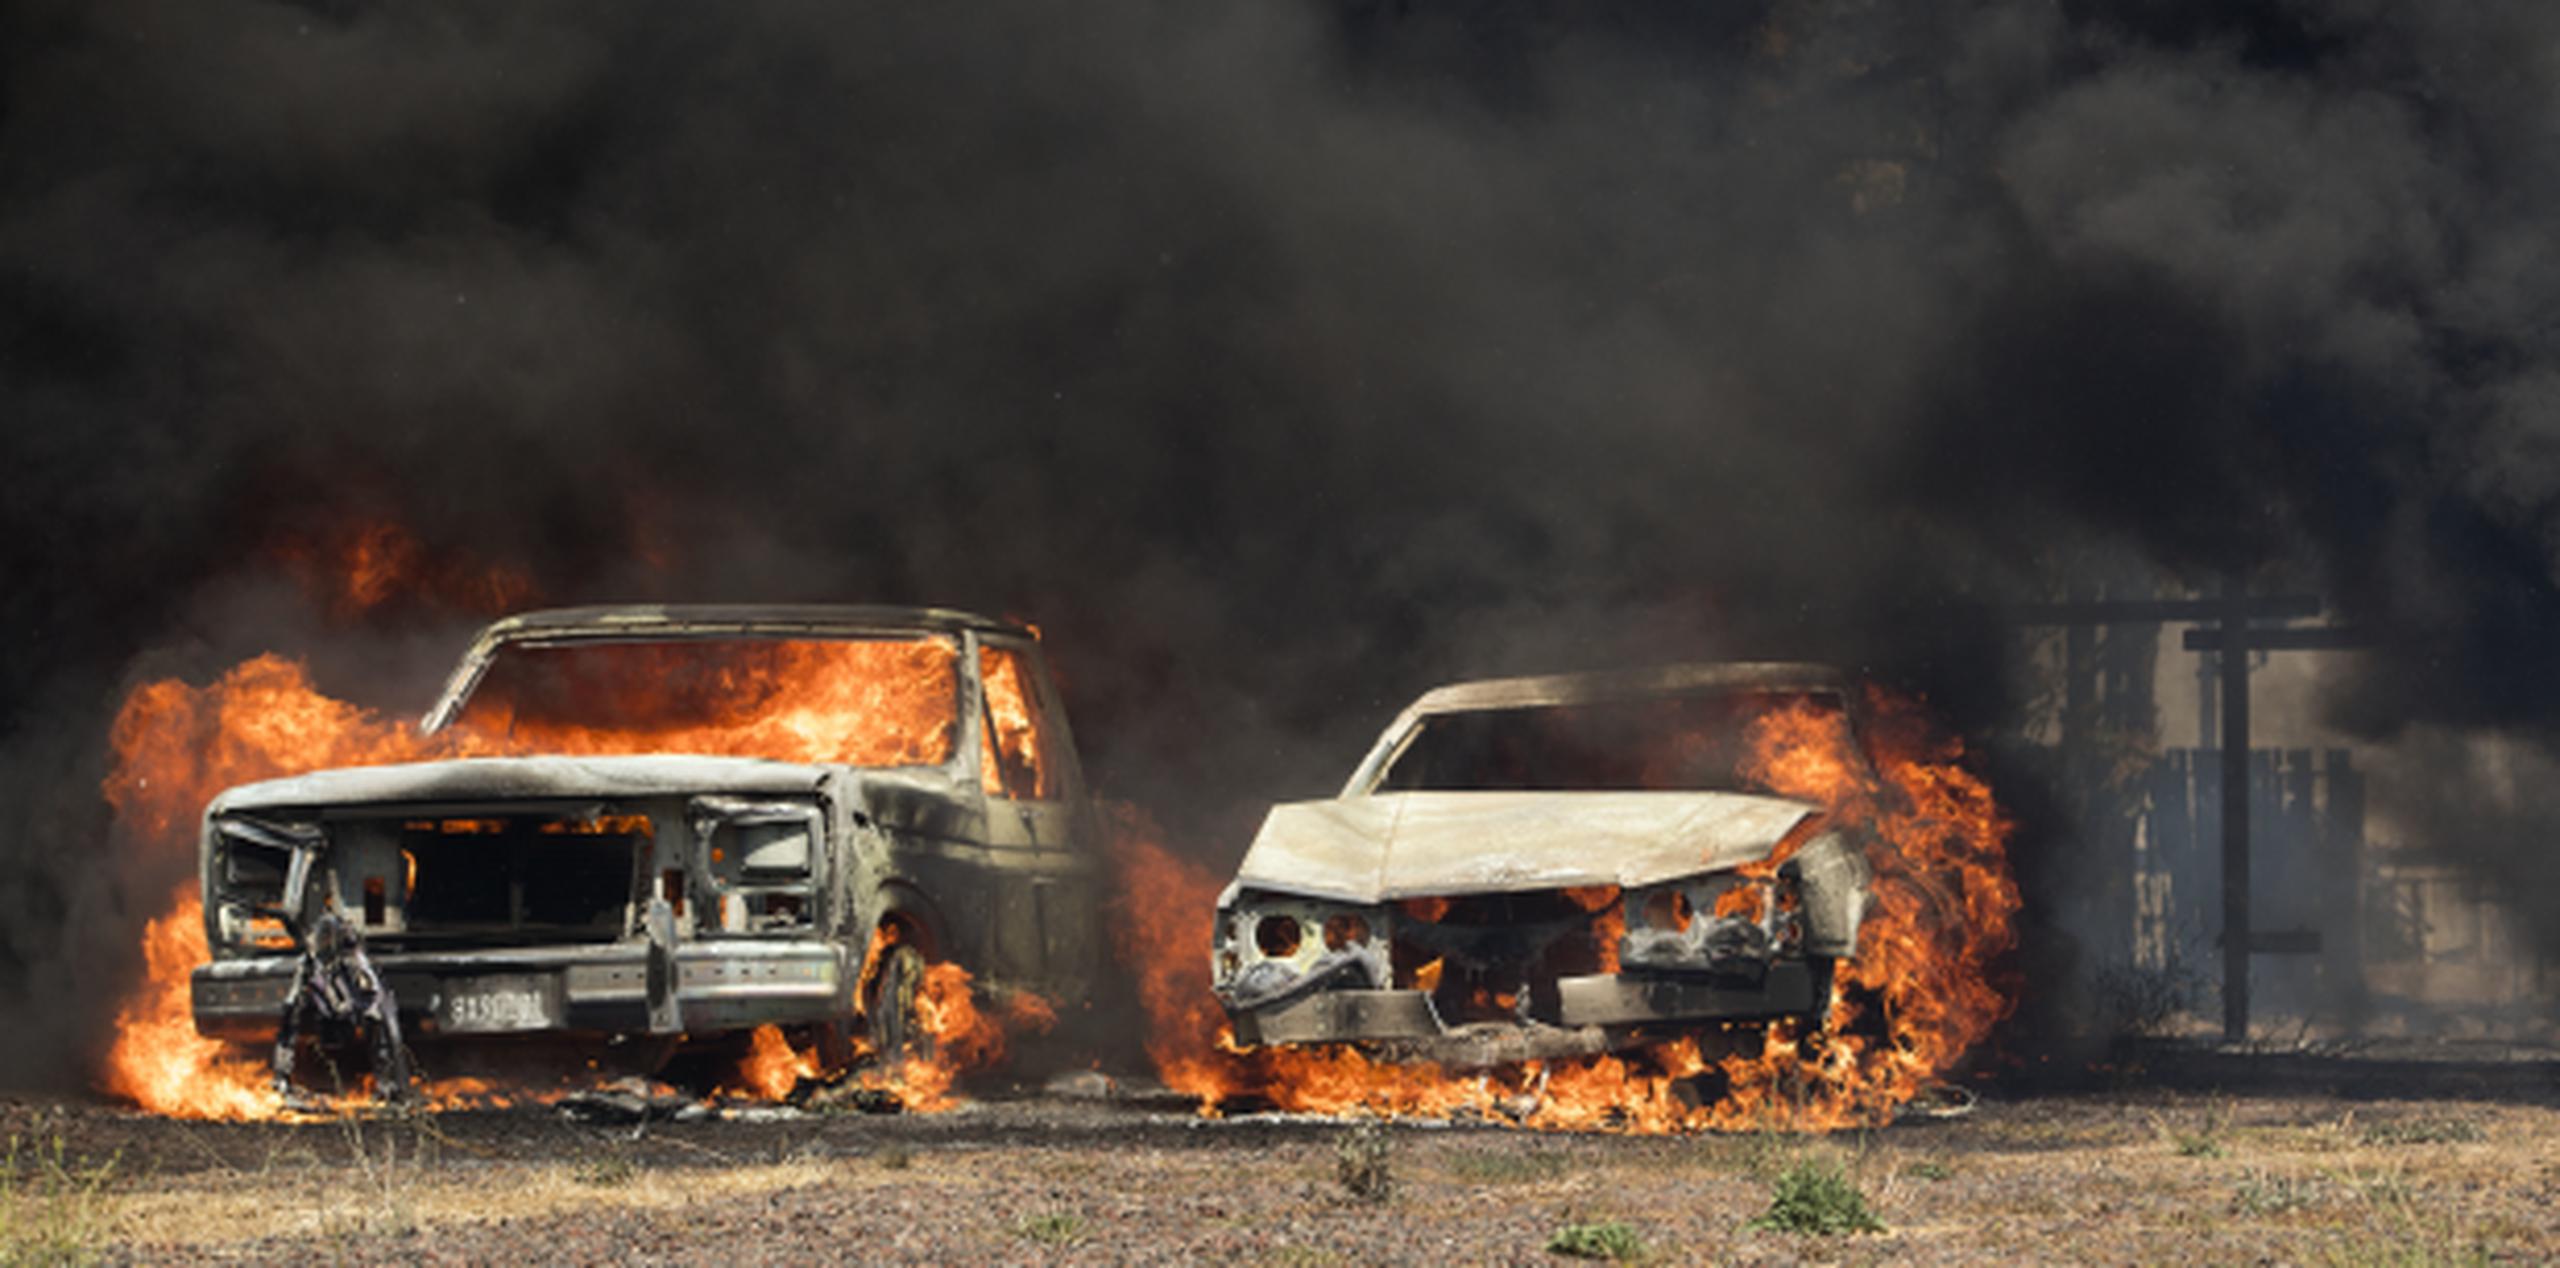 Dos vehículos arden luego de ser alcanzados por las llamas de uno de los incendios forestales que se extienden con rapidez por varias zonas de California. (AP/Josh Edelson)
